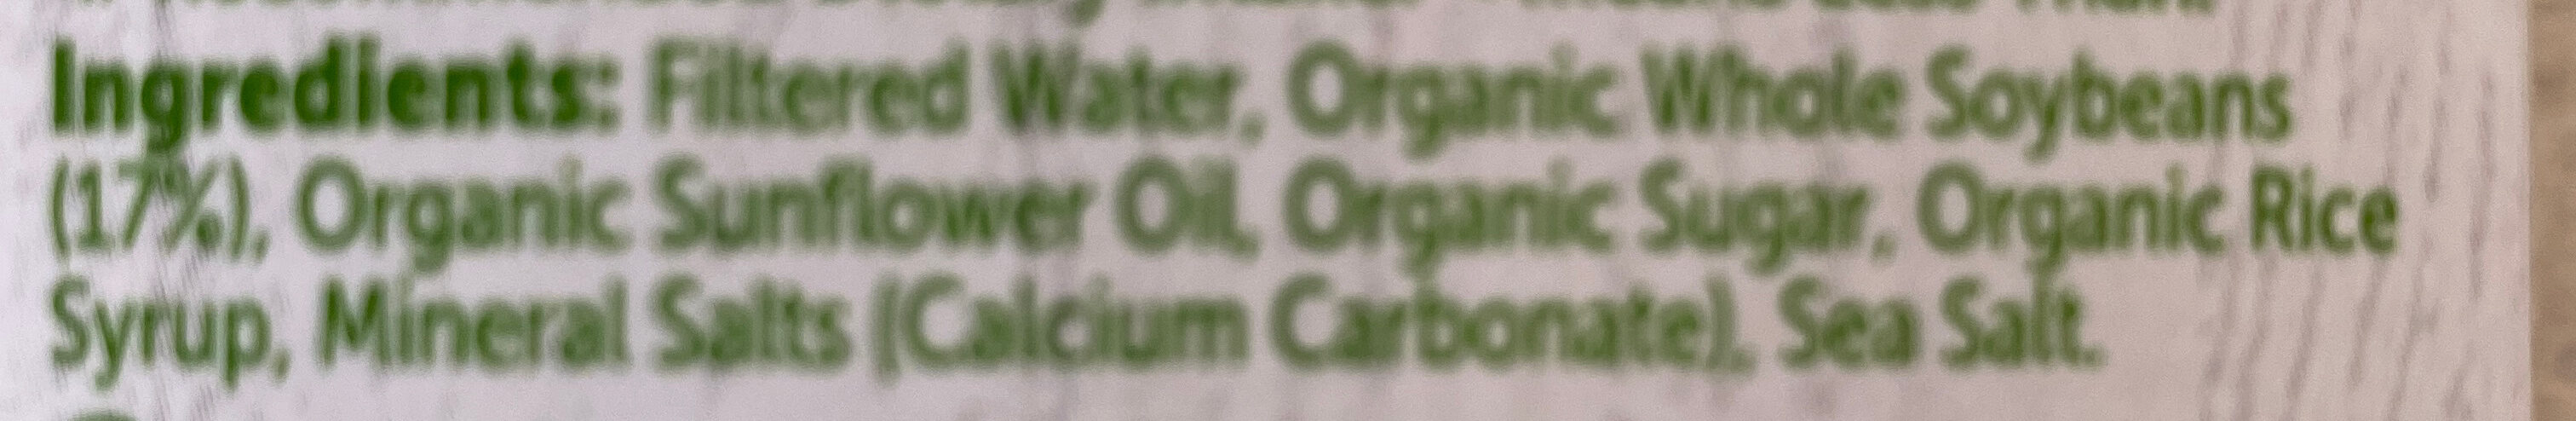 Organic Soy Milk - Ingredients